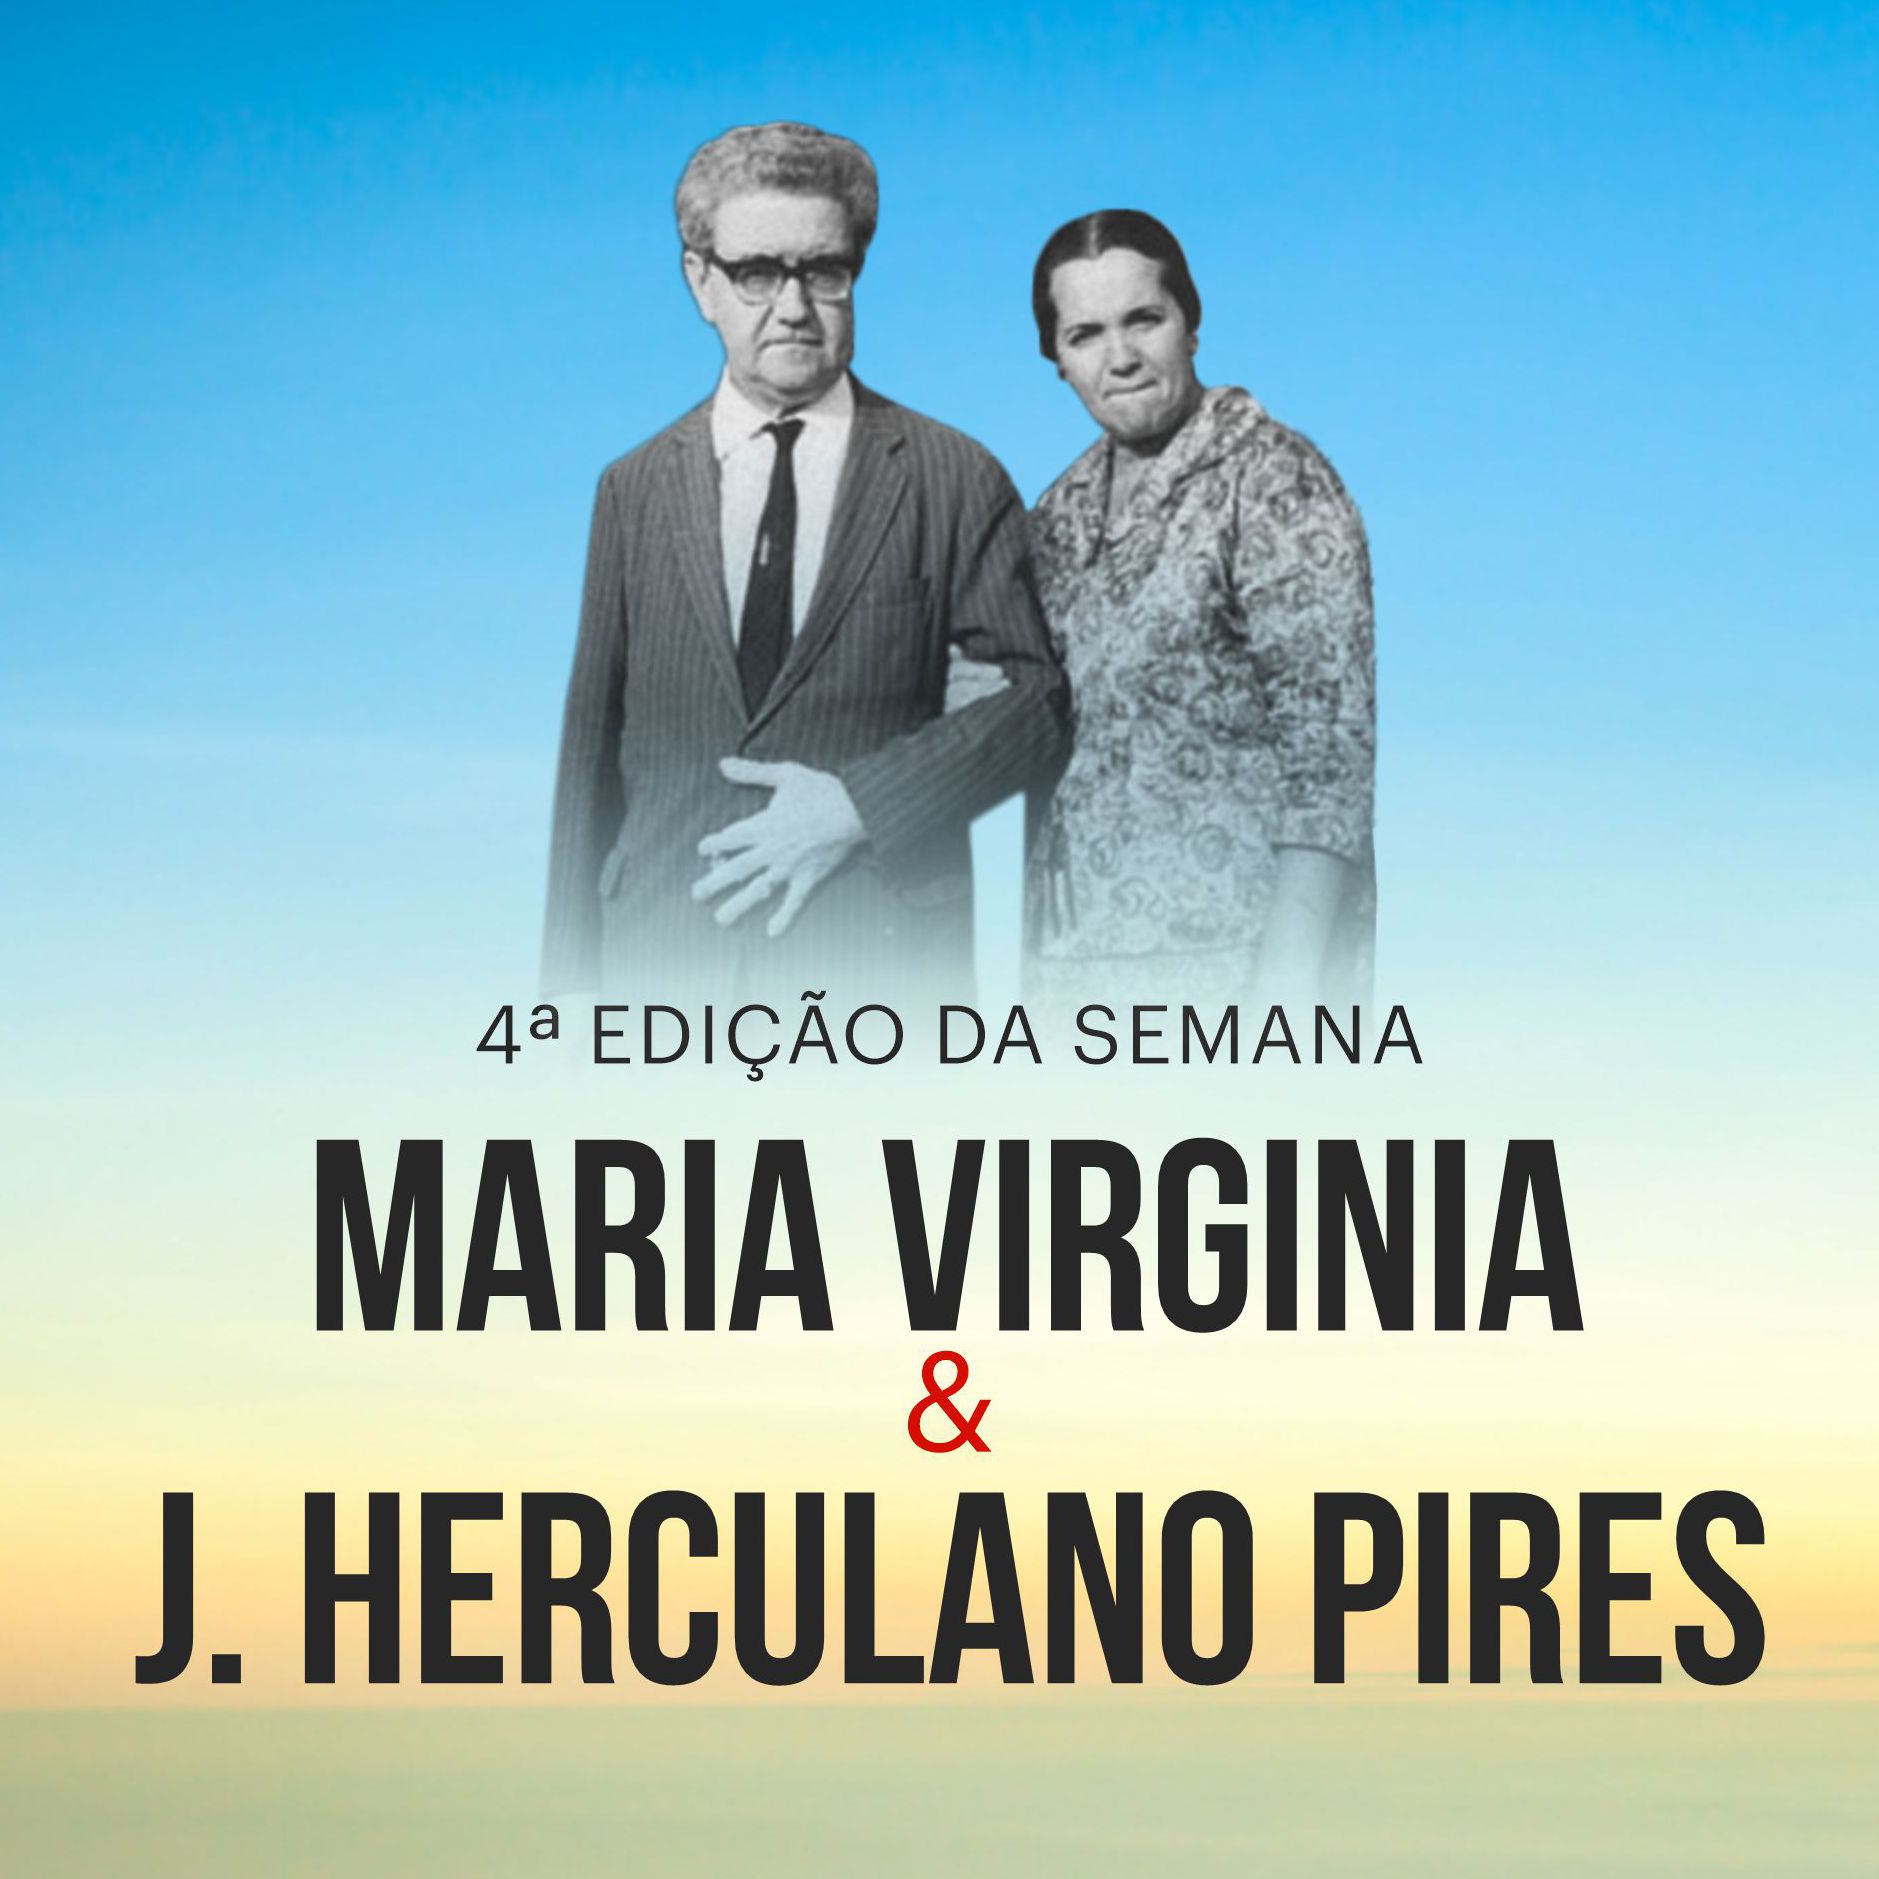 Vai começar a 4ª Semana Maria Virgínia & J. Herculano Pires!